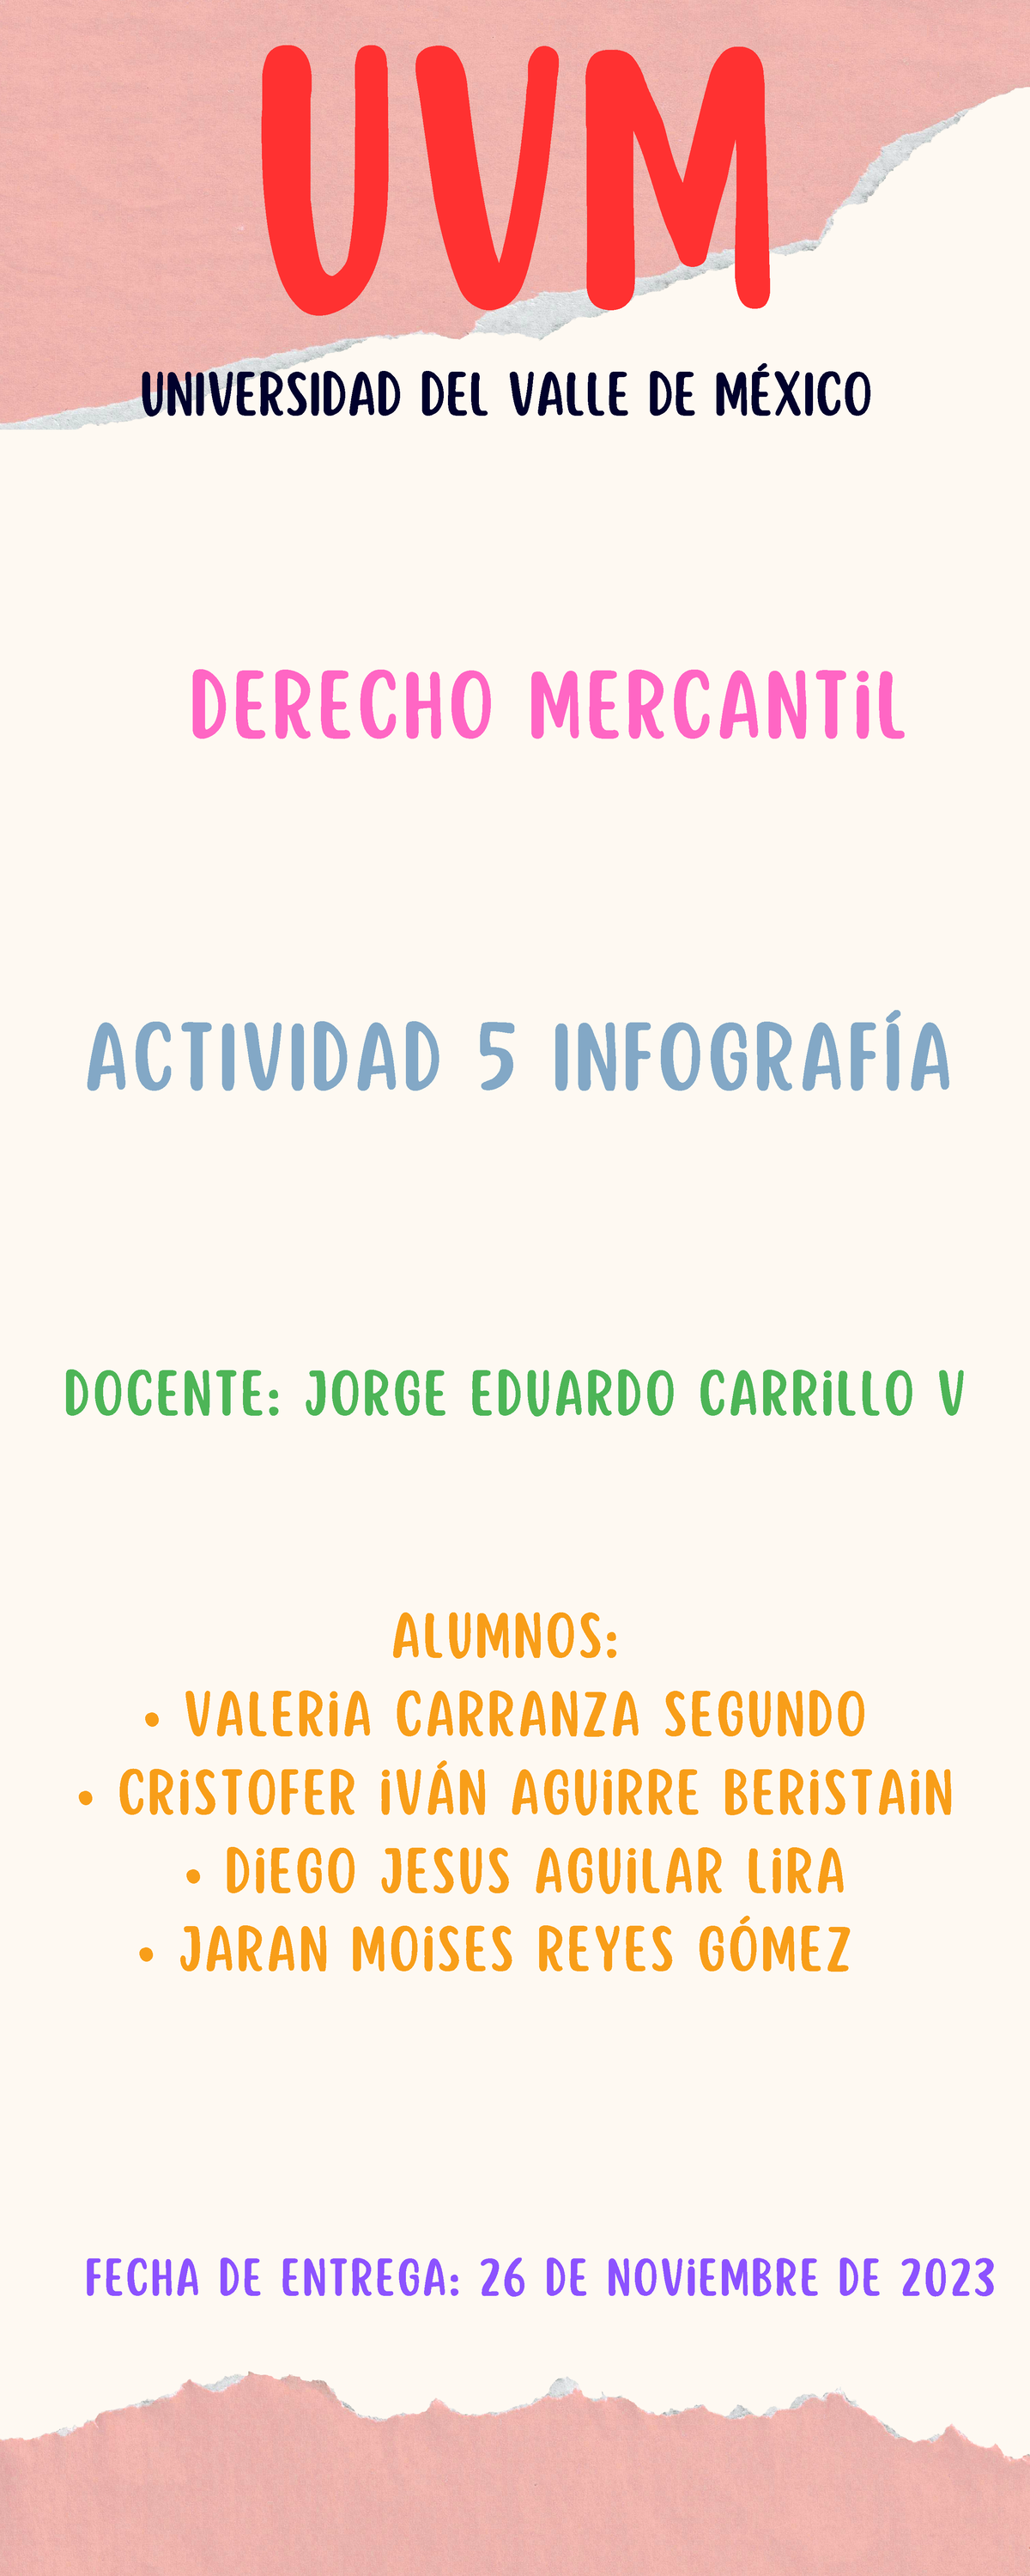 A5 Dm Derechos Humanos Actividad 5 Infografía Uvm Universidad Del Valle De MÉxico Actividad 1154